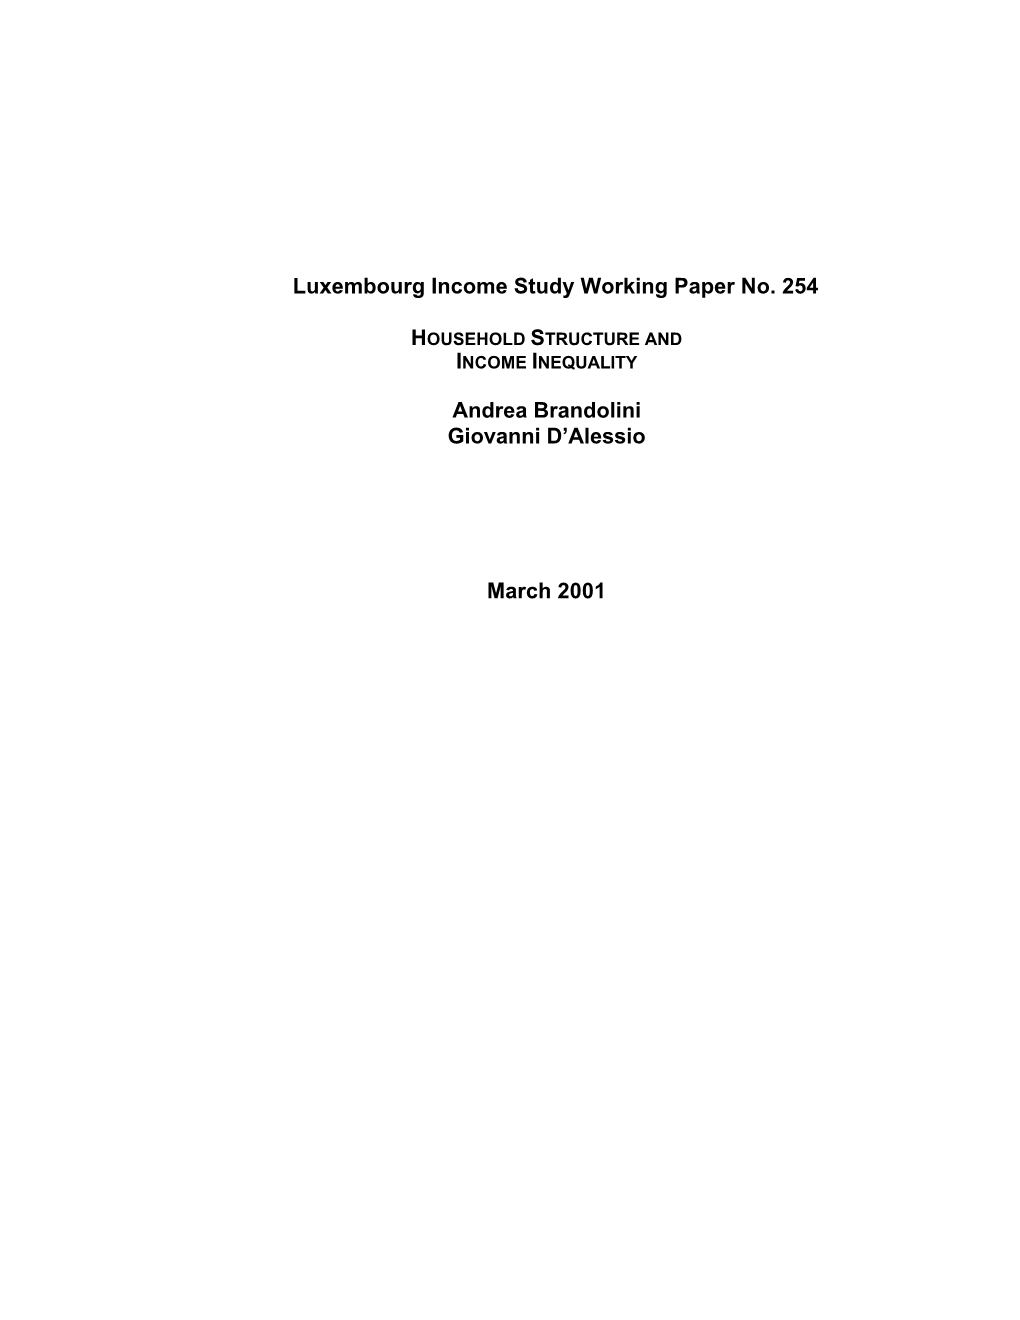 Luxembourg Income Study Working Paper No. 254 Andrea Brandolini